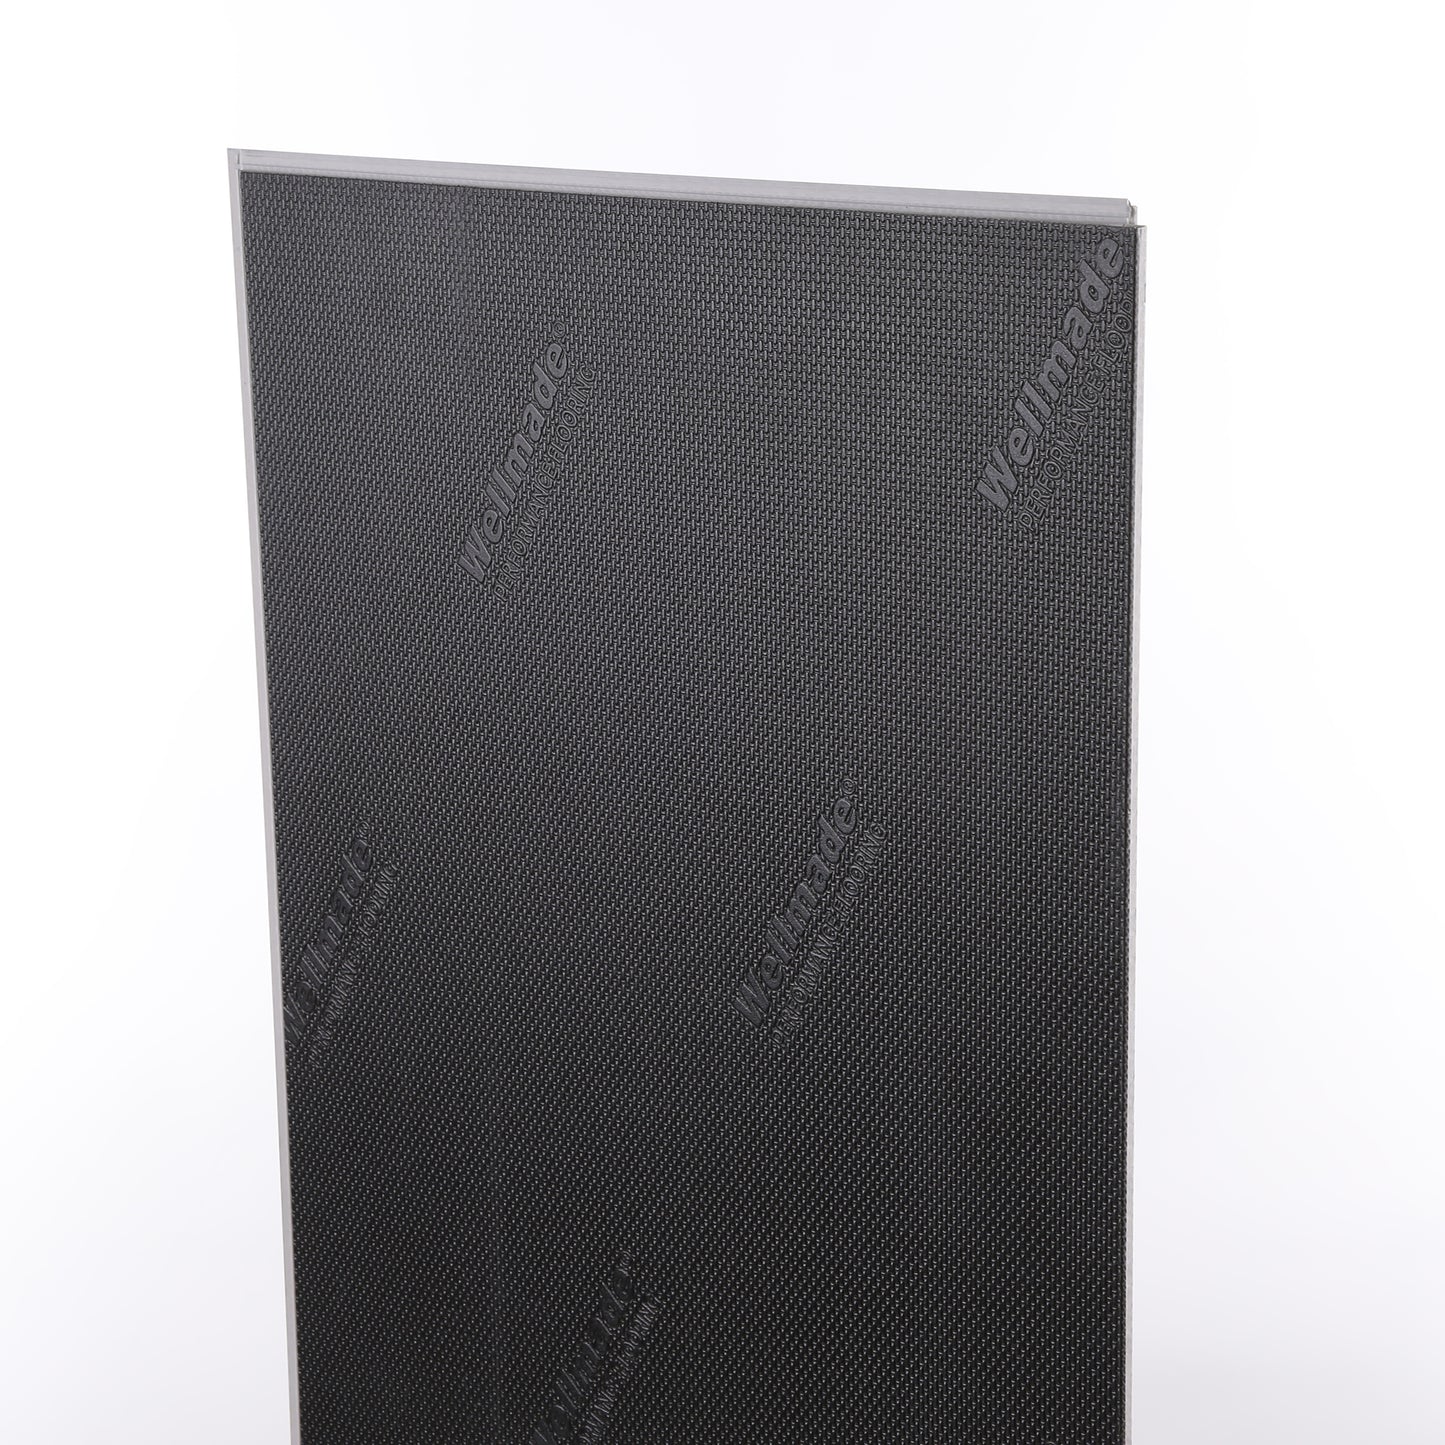 6mm Milan Marble HDPC® Waterproof Luxury Vinyl Tile Flooring 12 in. Wide x 24 in. Long